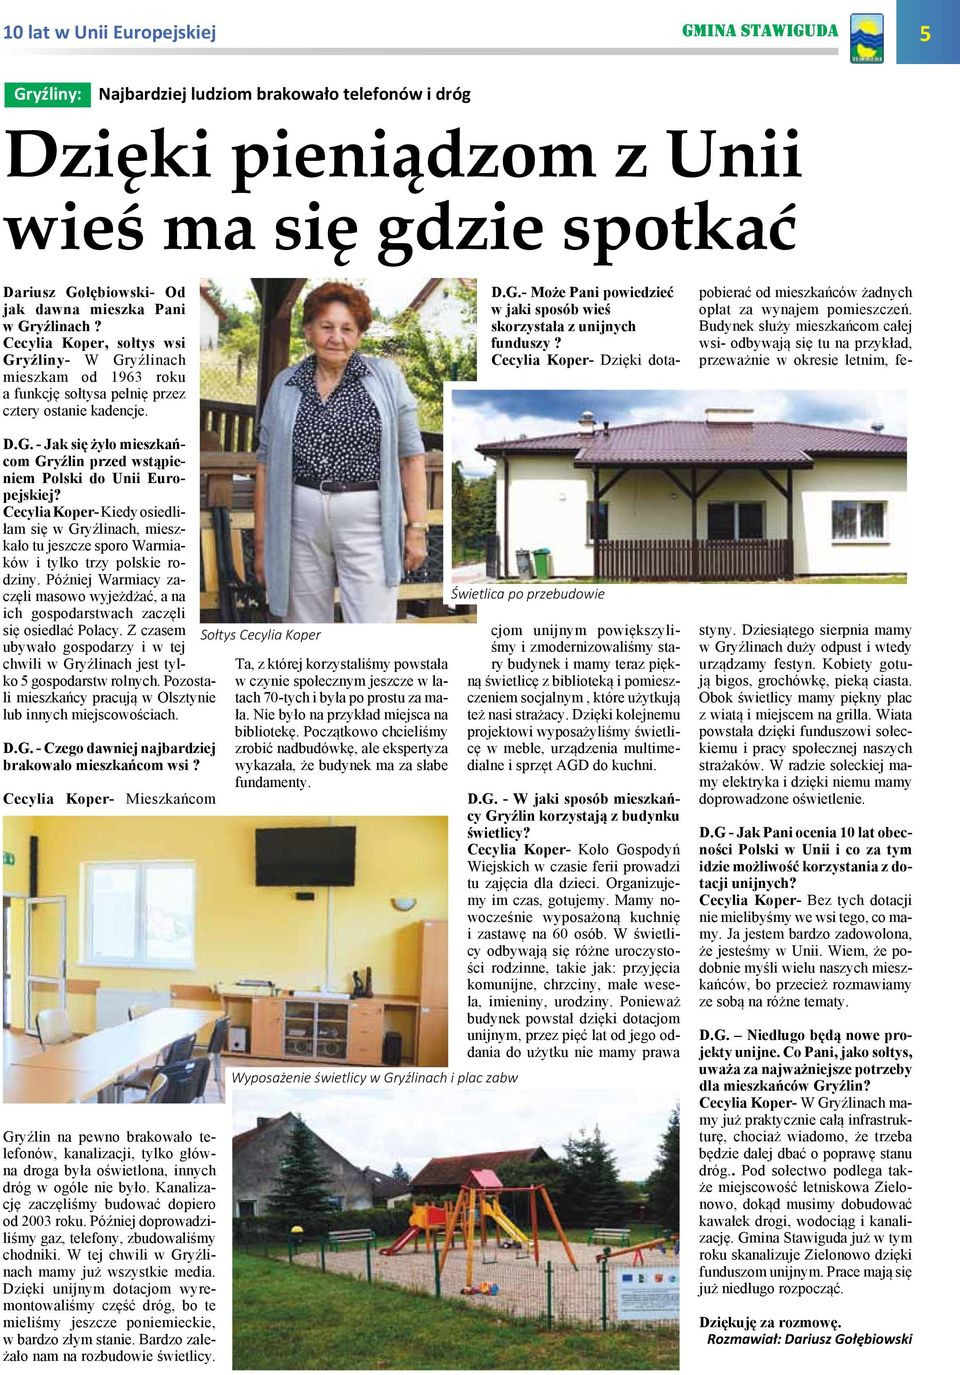 Cecylia Koper- Kiedy osiedliłam się w Gryźlinach, mieszkało tu jeszcze sporo Warmiaków i tylko trzy polskie rodziny.